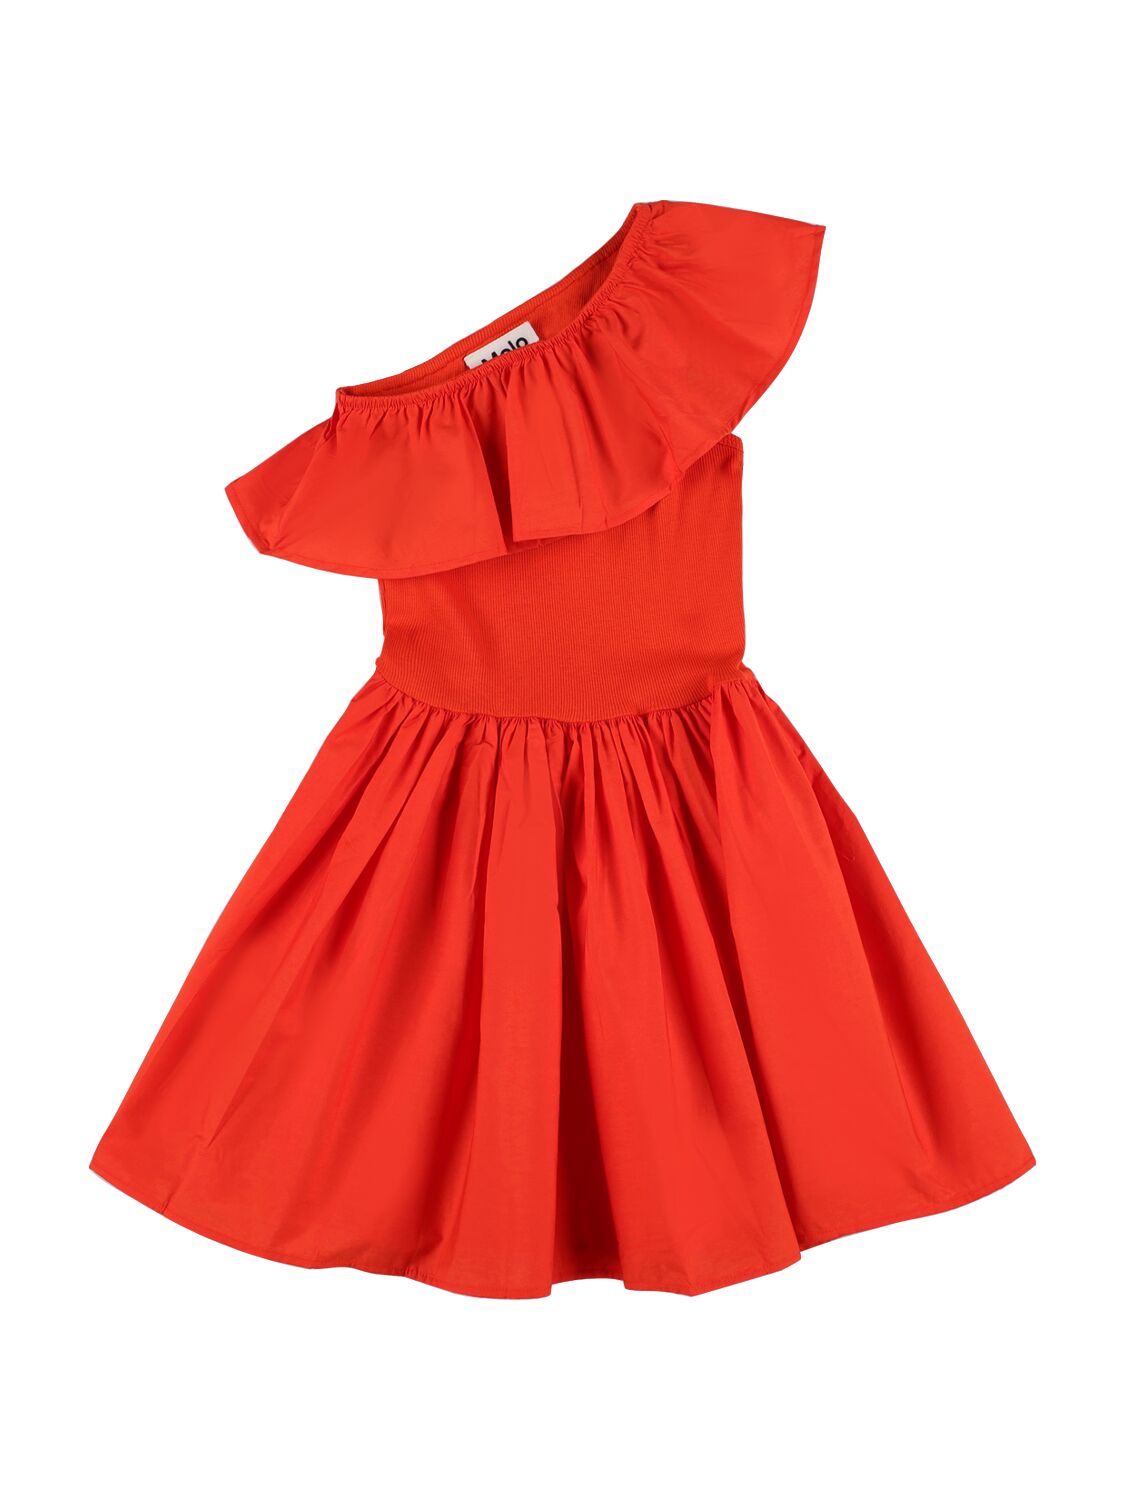 Molo Kids' Cotton Jersey & Poplin Dress In Red